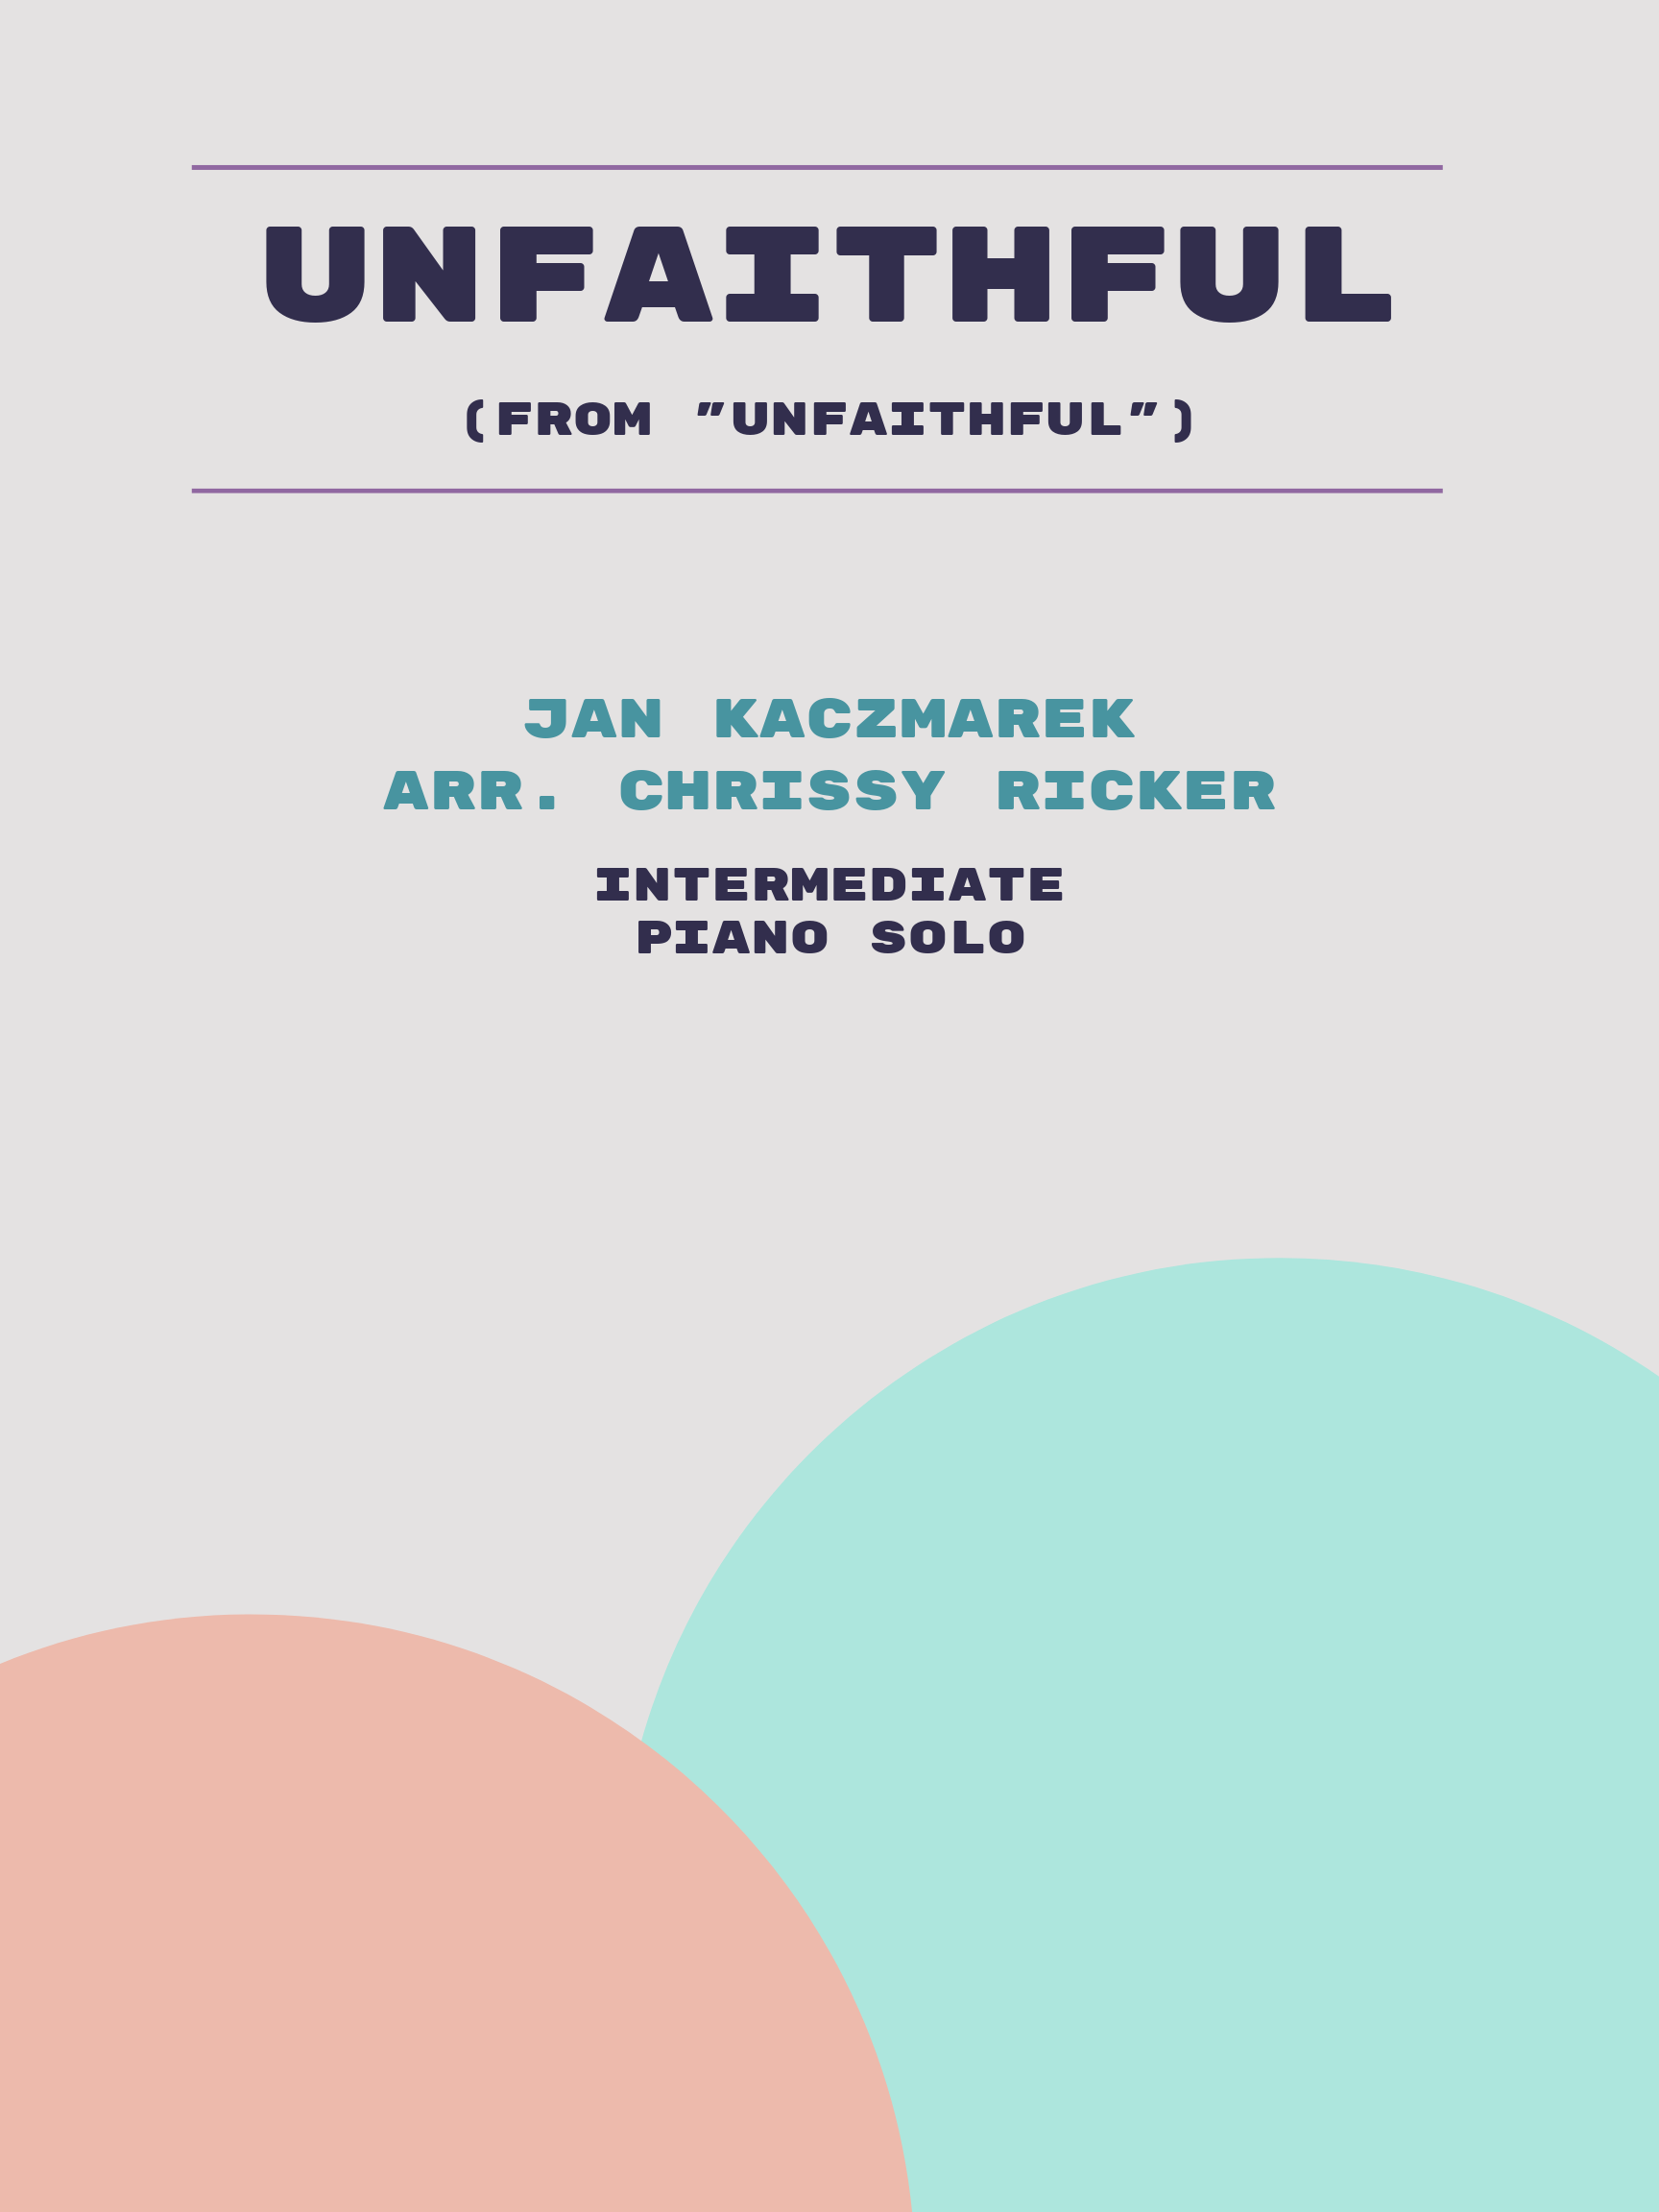 Unfaithful by Jan Kaczmarek